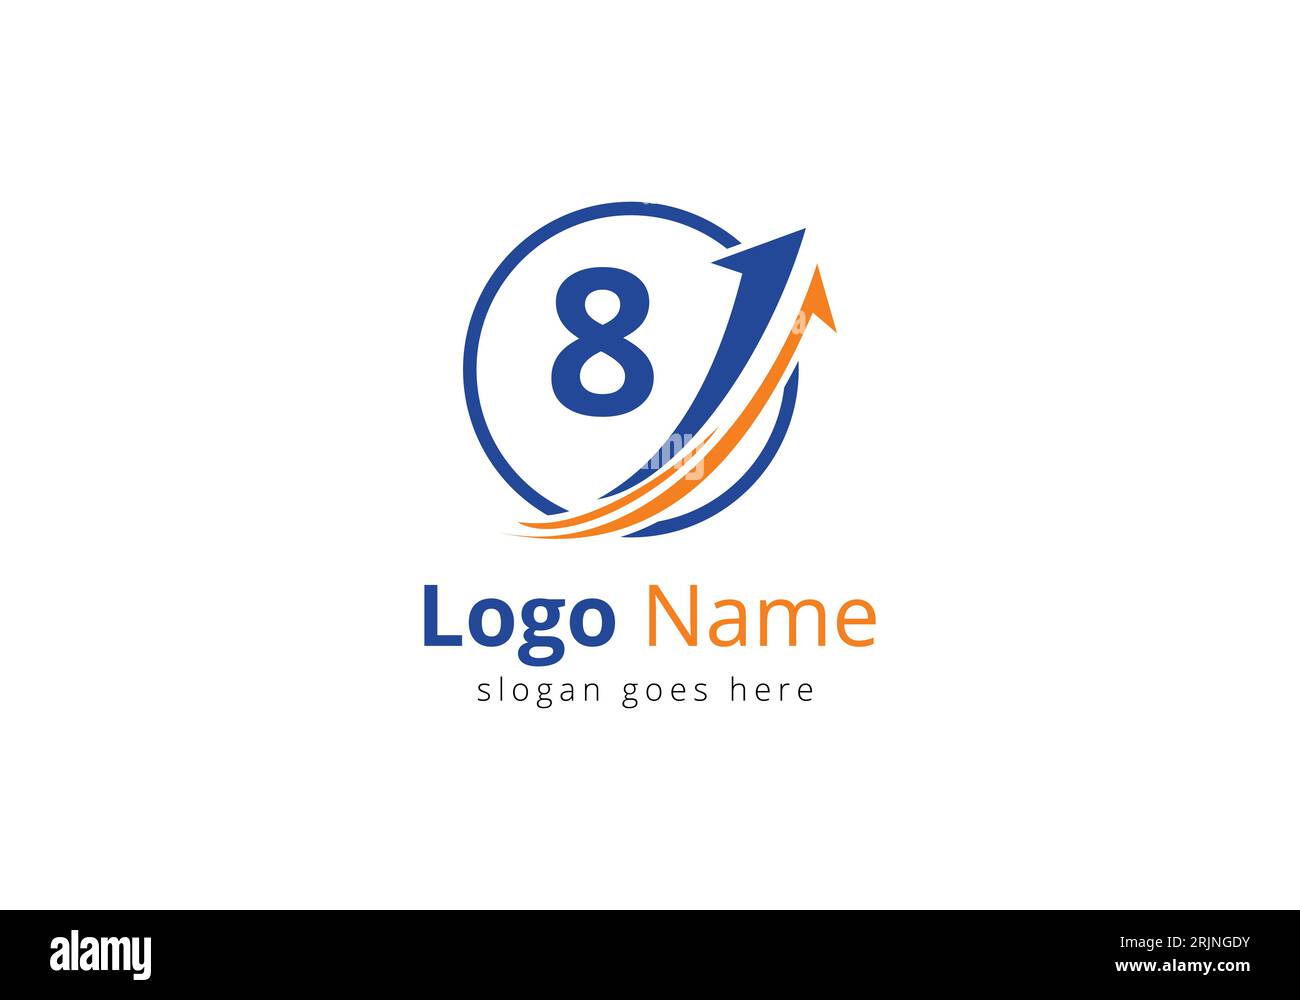 Logo de financement avec concept de 8 lettres. Concept de logo financier ou de réussite. Logo pour l'entreprise comptable et l'identité de l'entreprise Illustration de Vecteur